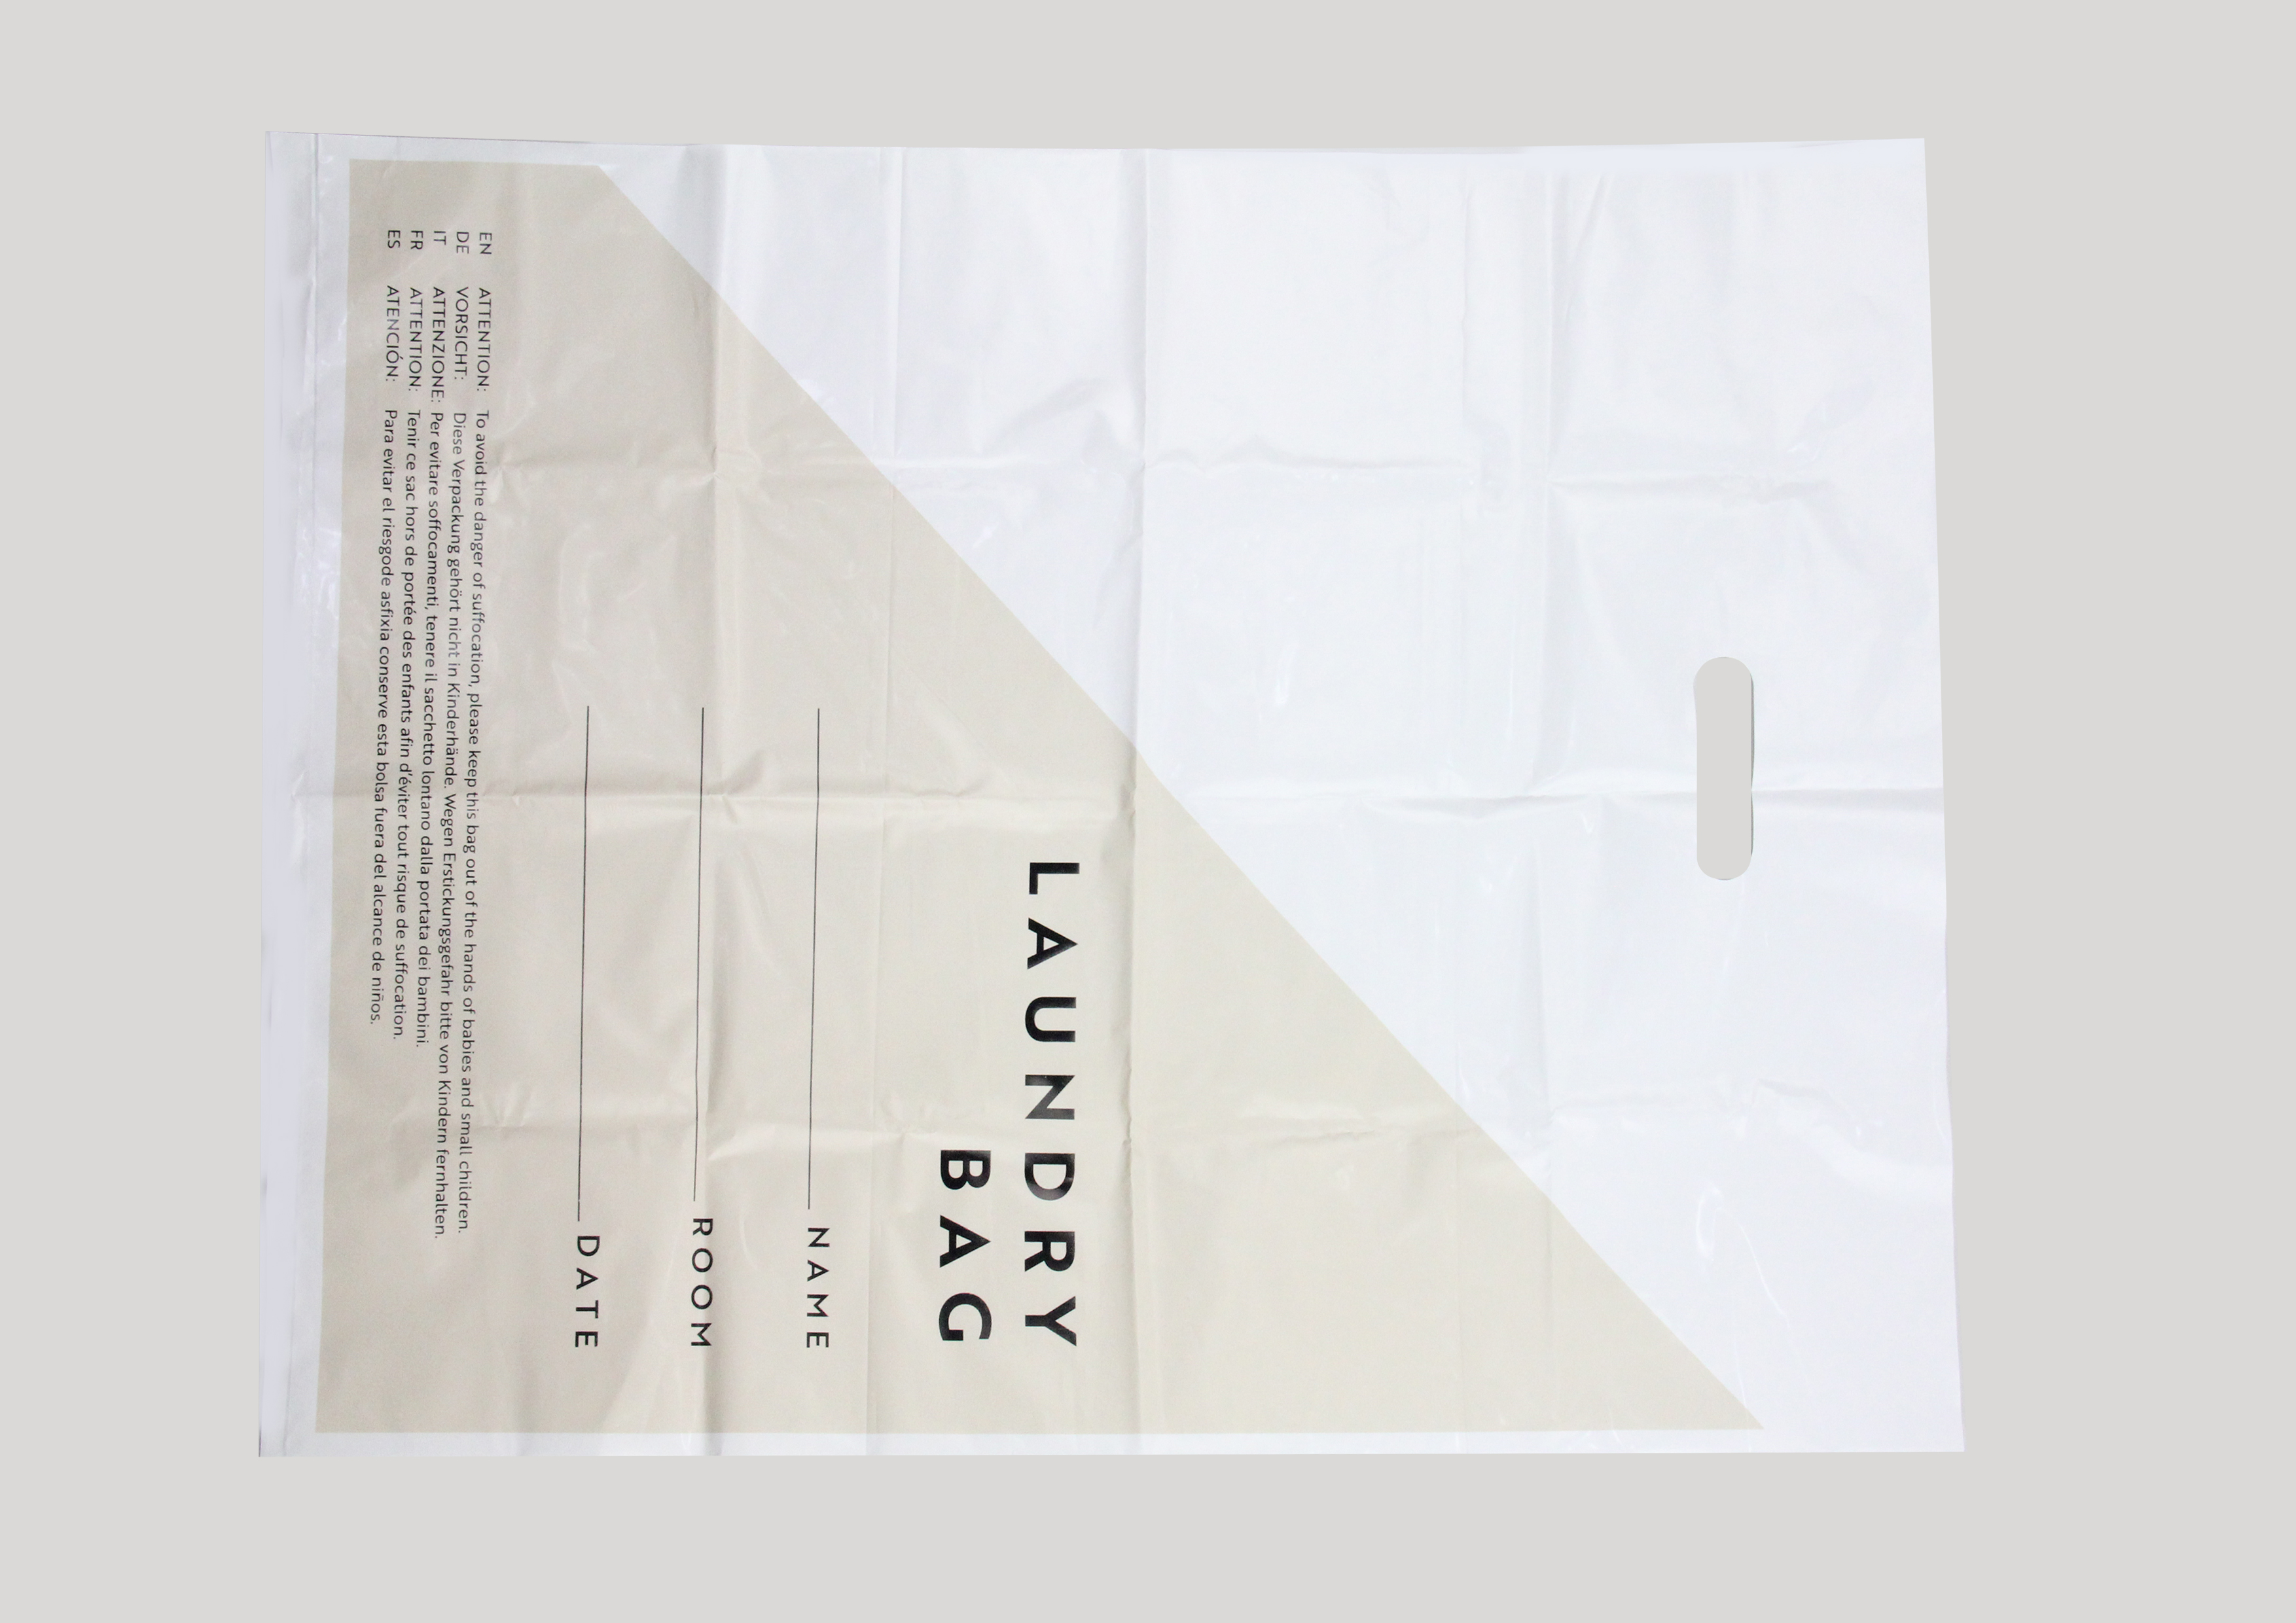 BASIC - Plastic Laundry Bag, size 40x55cm.